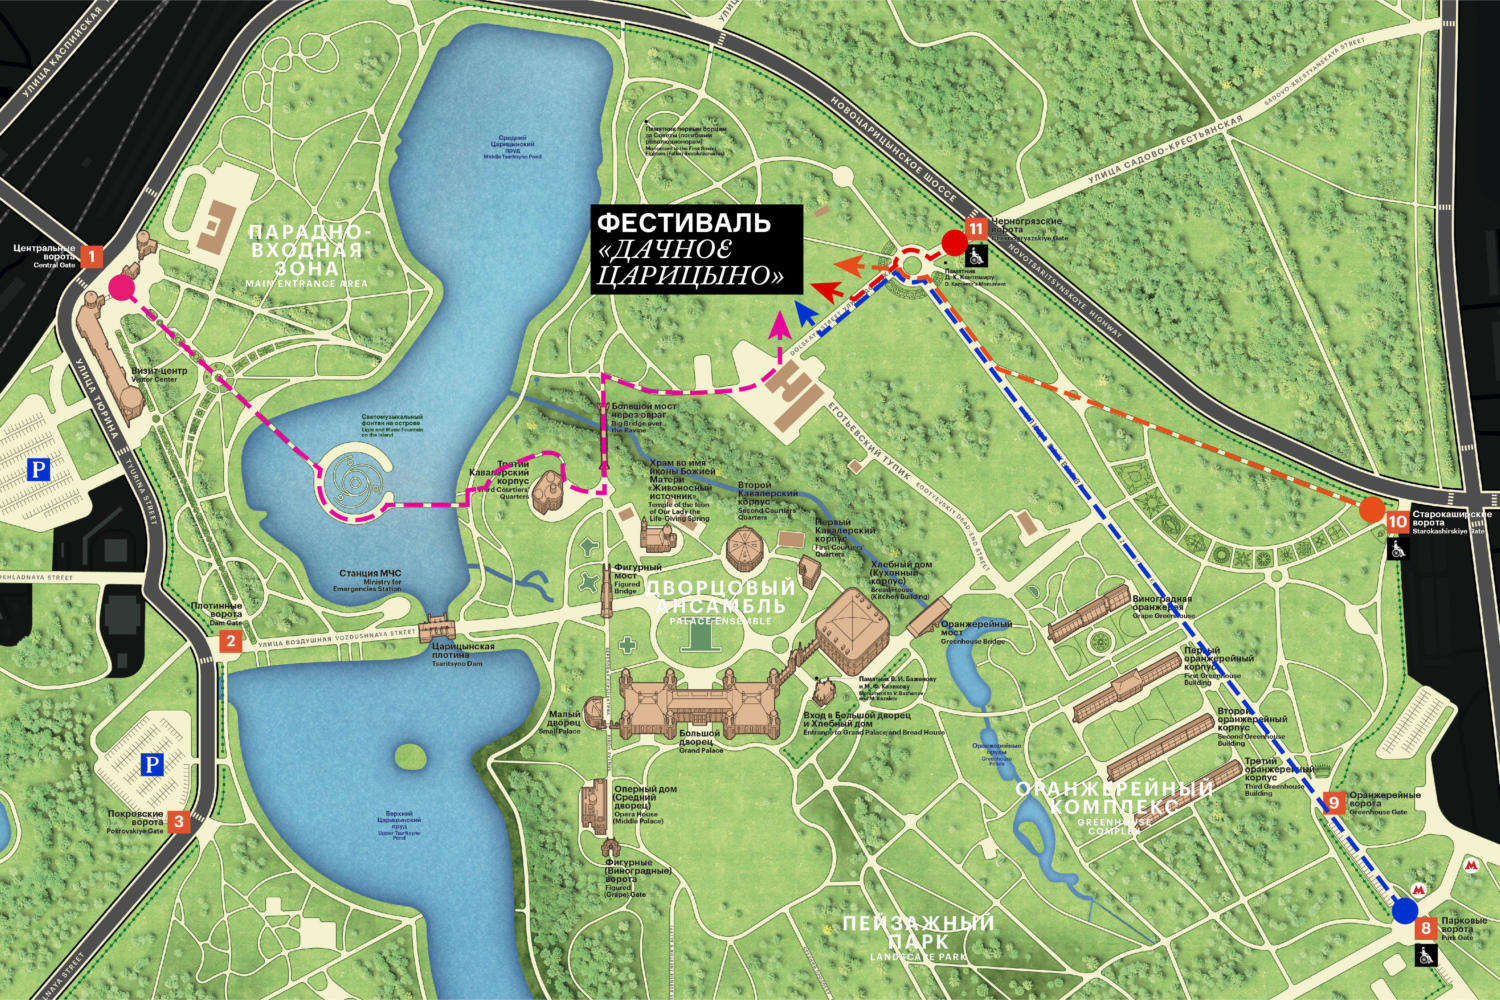 Карта парка Царицыно. План-схема усадьбы Царицыно